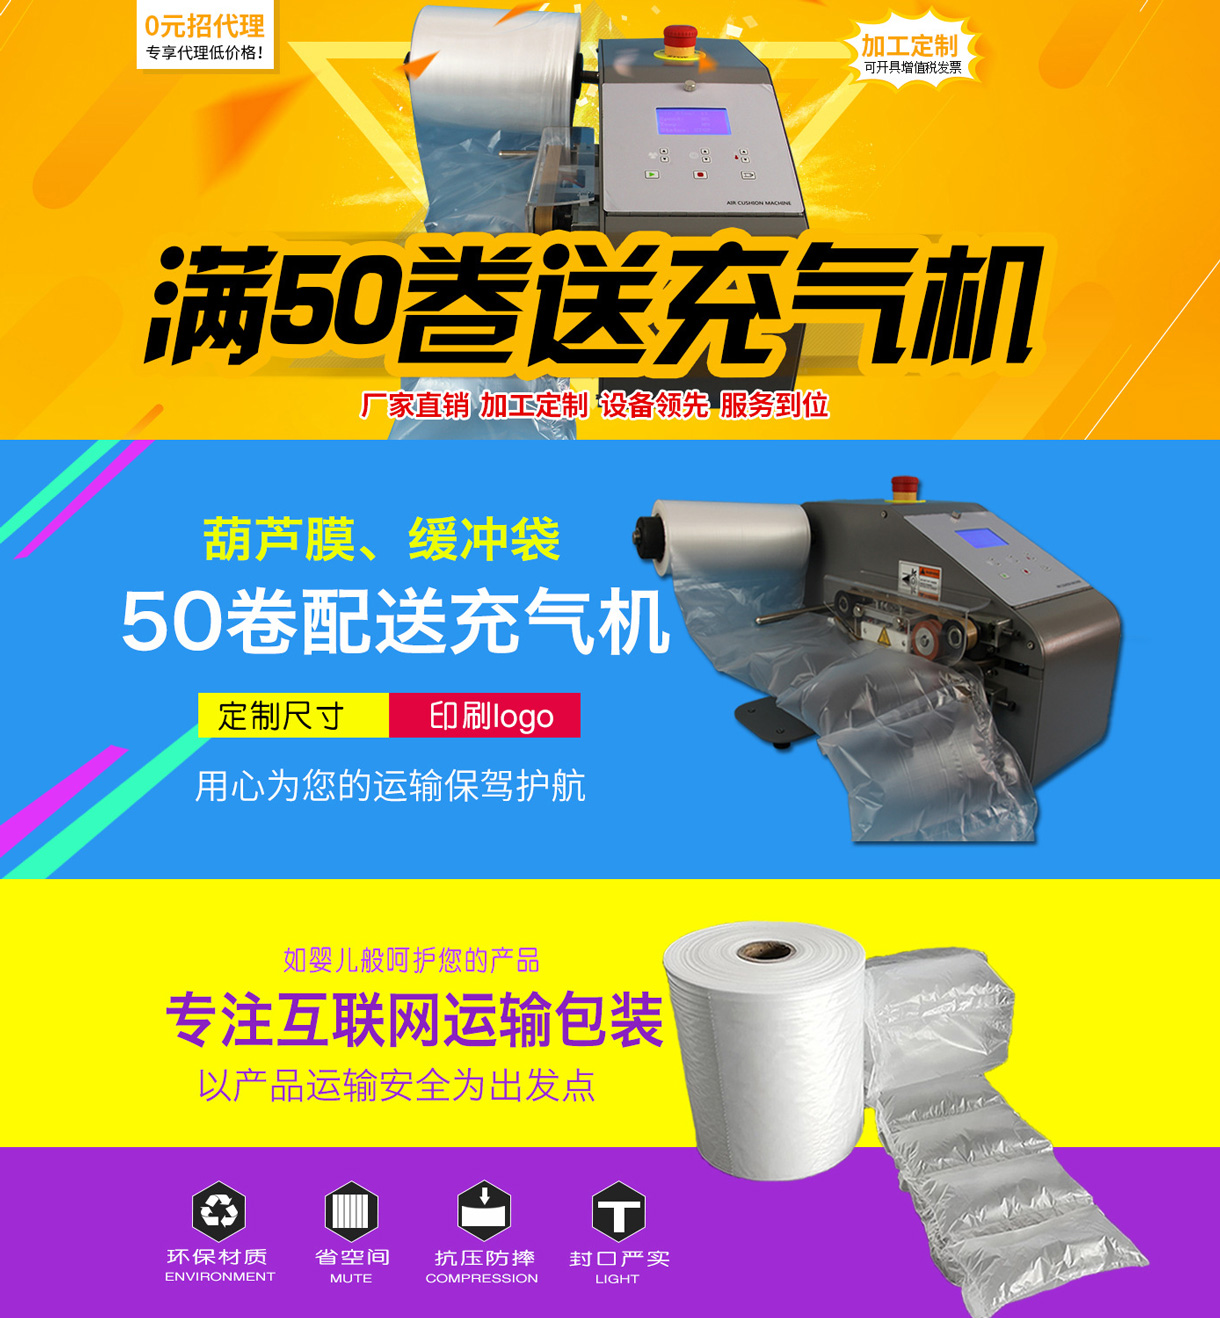 广州派王包装制品有限公司-中国国际包装展-中国包装容器展